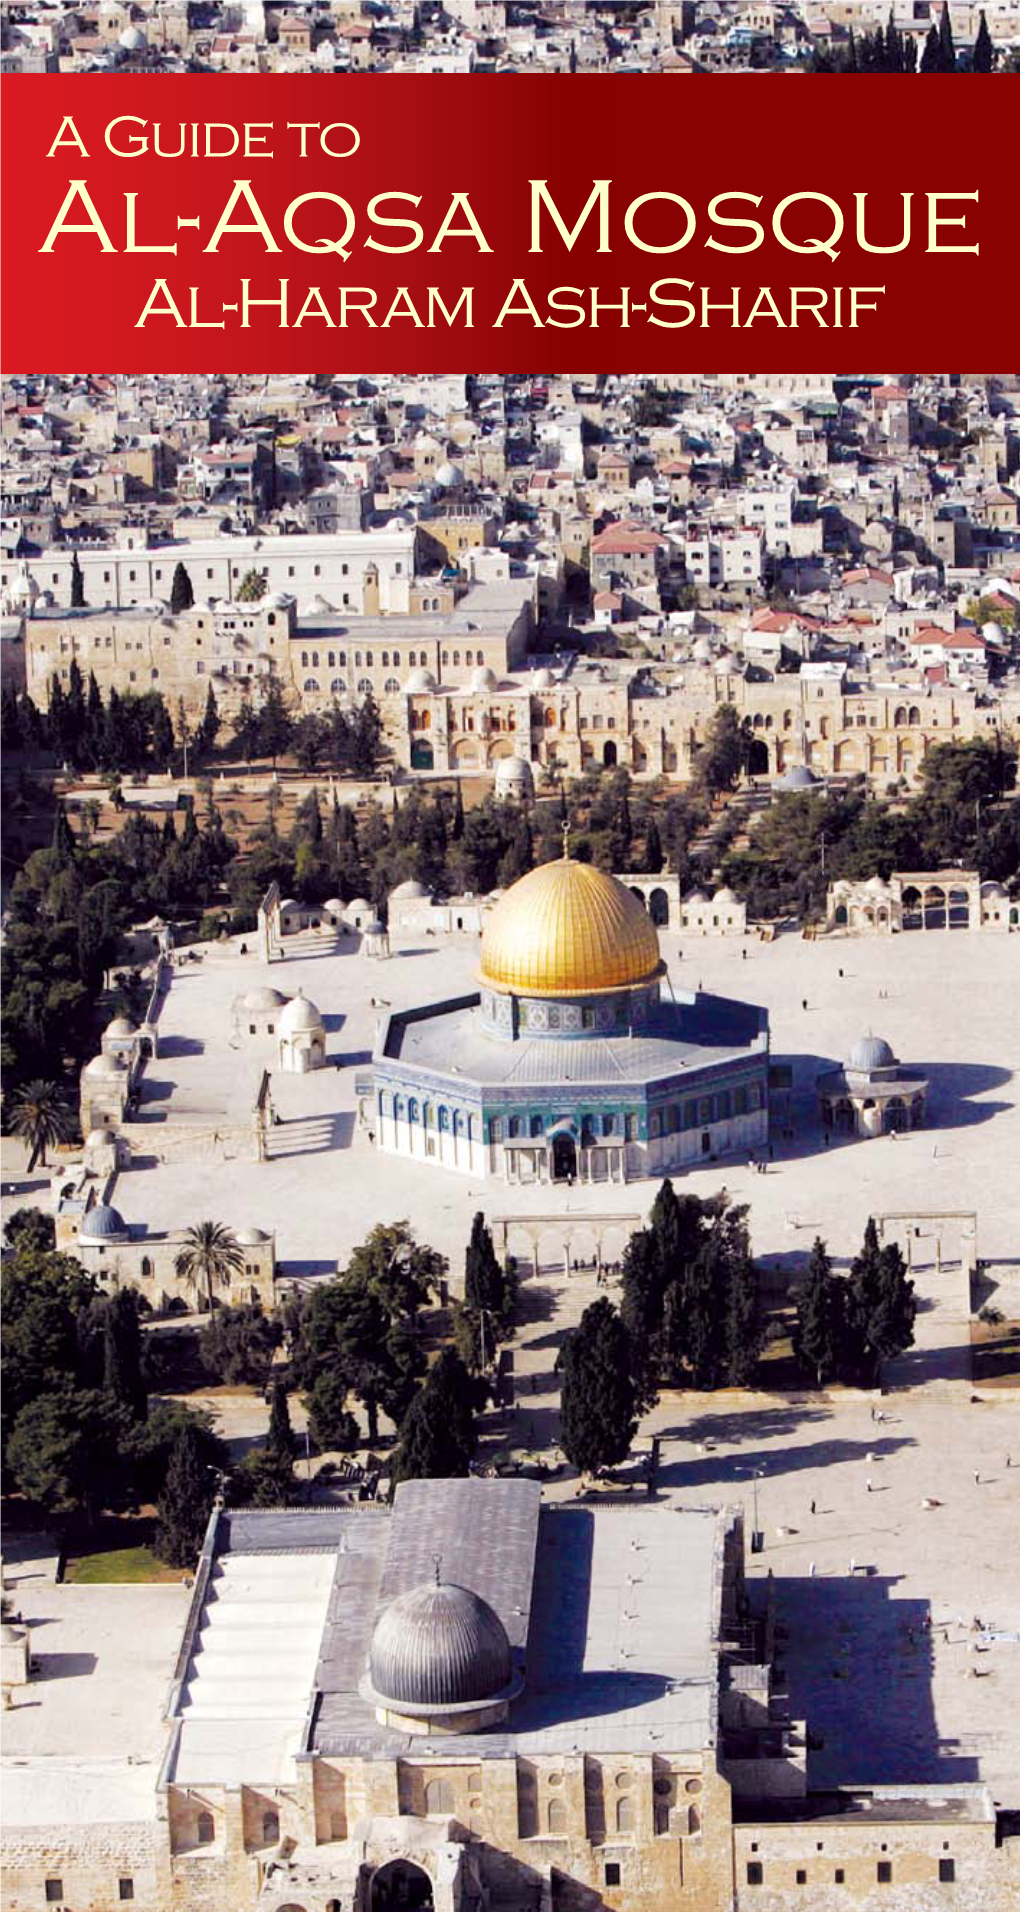 A Guide to Al-Aqsa Mosque Al-Haram Ash-Sharif Contents